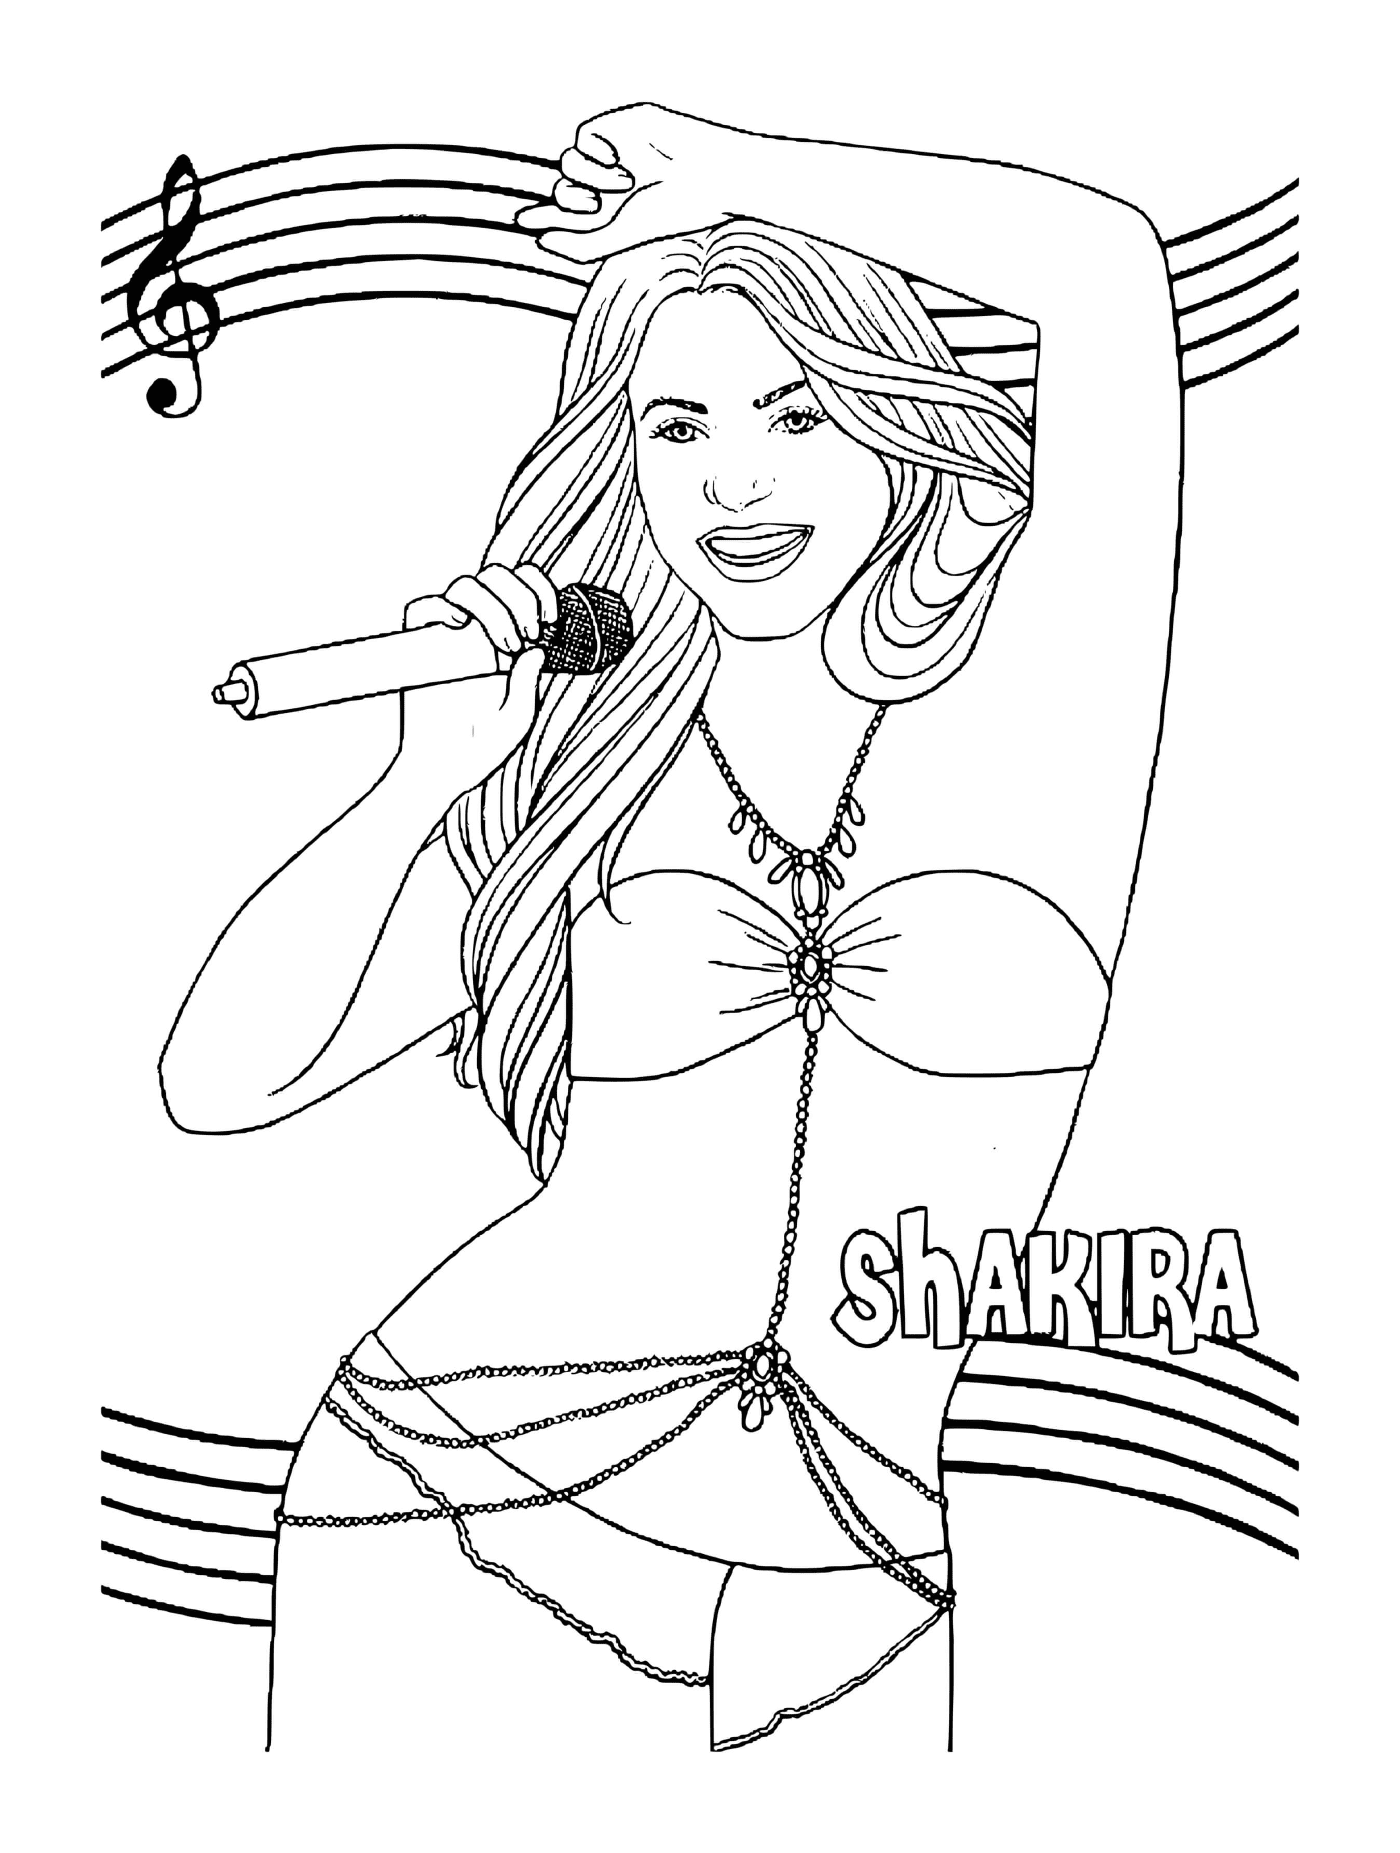  Singer Shakira singing 